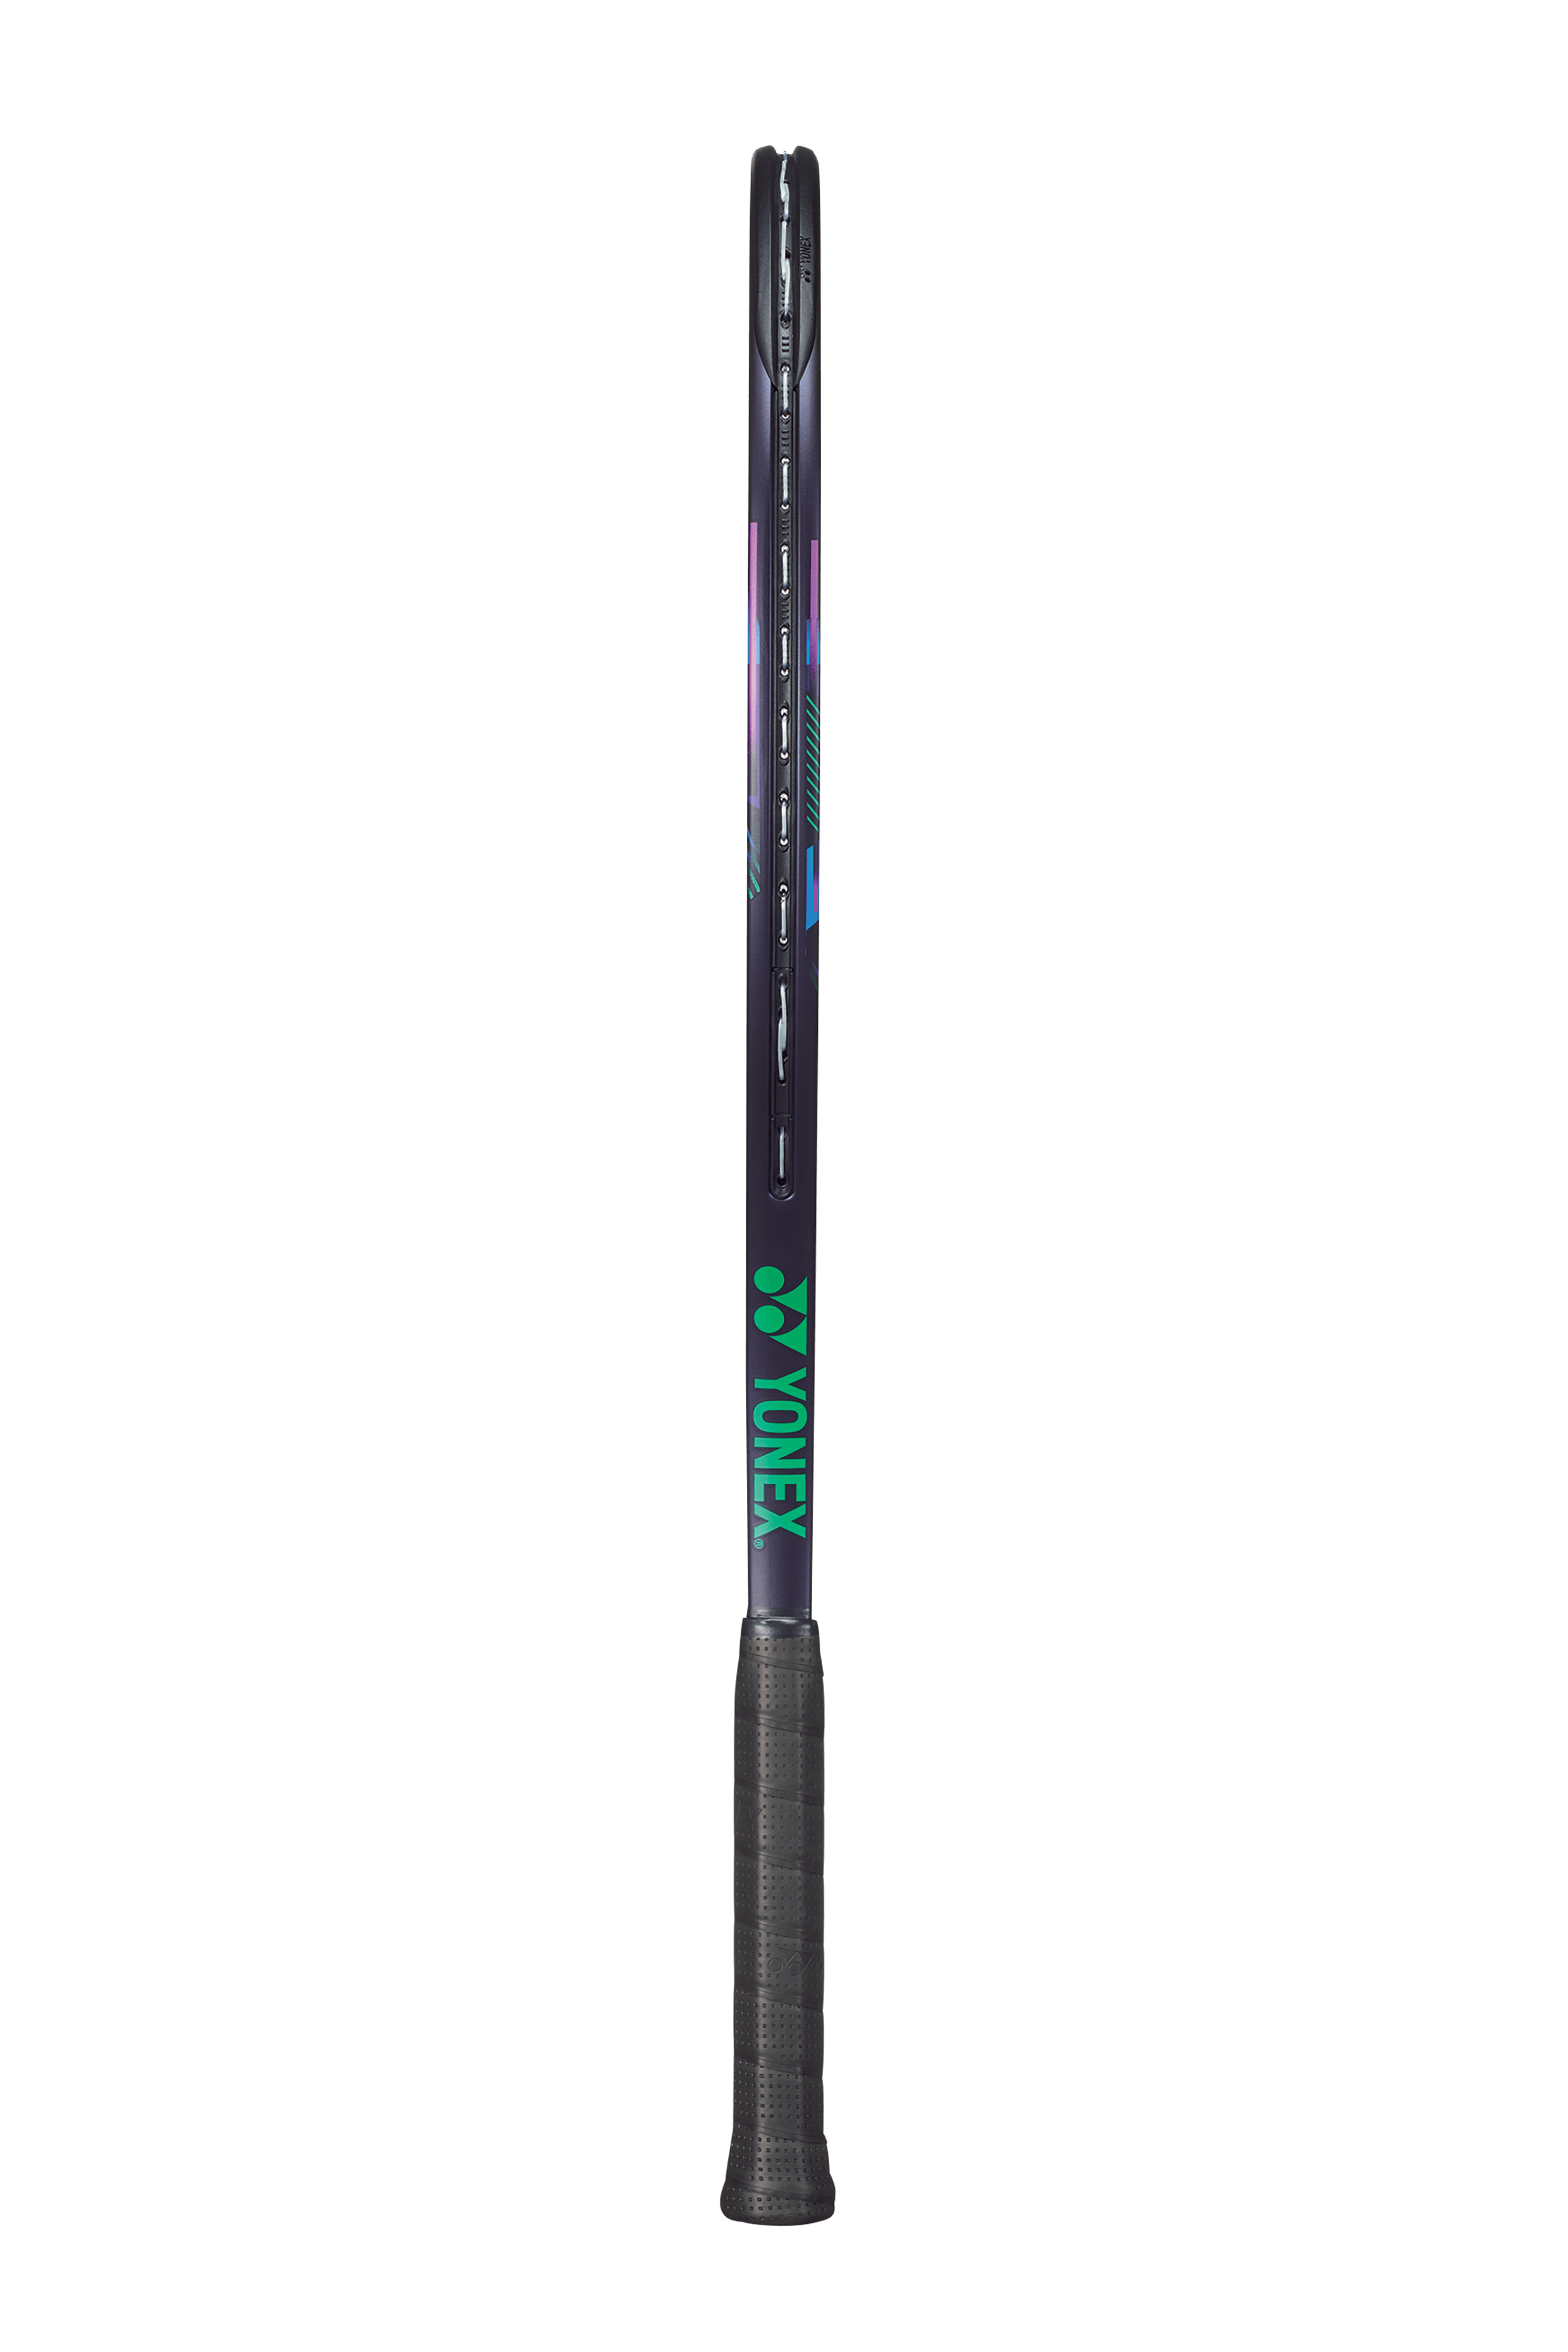 Yonex V-Core Pro 100 Racquet · Unstrung